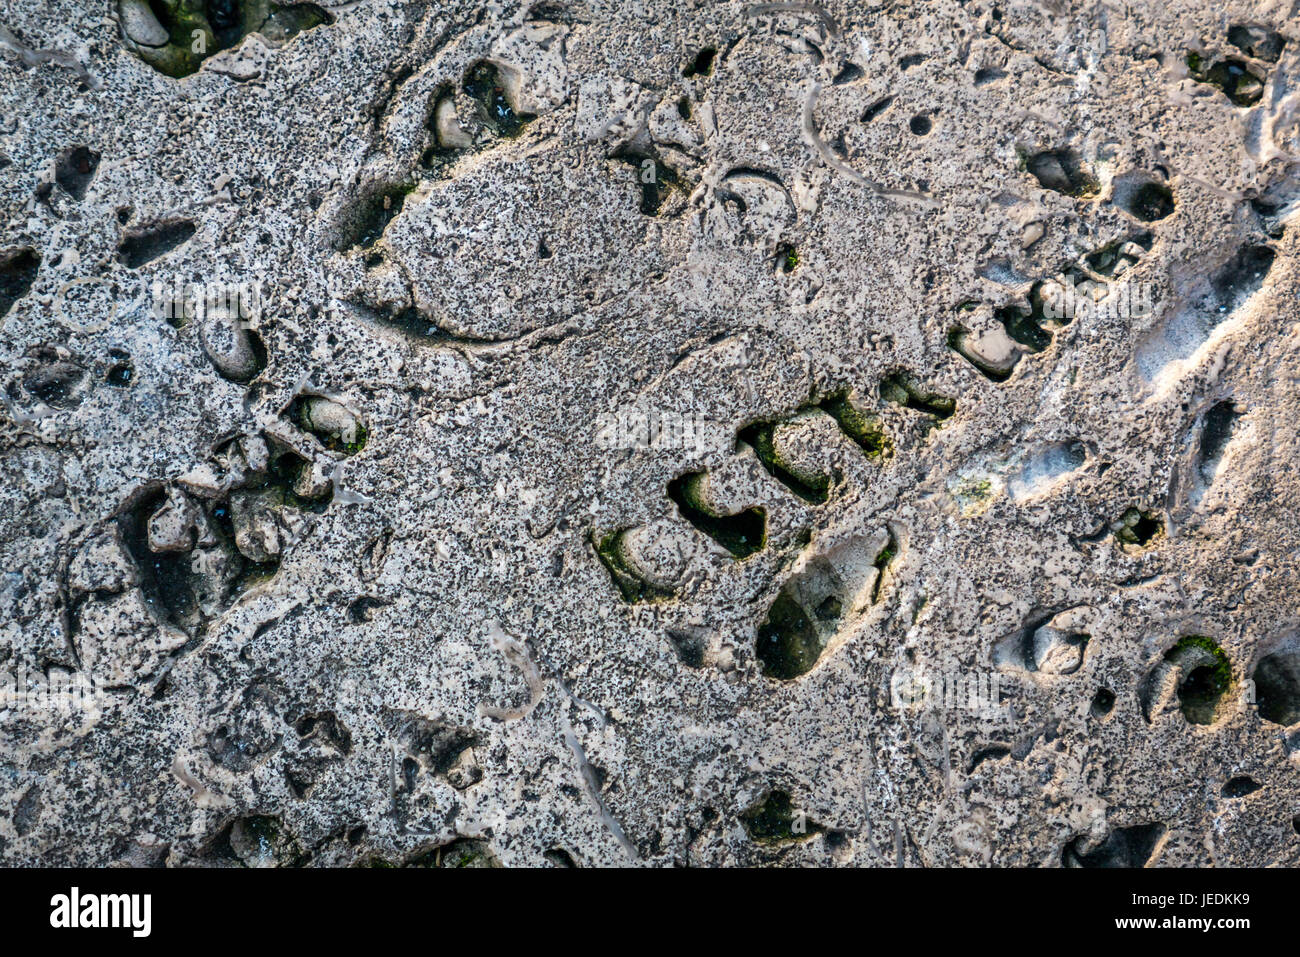 Période jurassique calcaire de Portland avec fossiles, moulages et moules de coquillages sur un banc appelé Time Bench par Paul de Monchaux, Londres, Angleterre, Royaume-Uni Banque D'Images